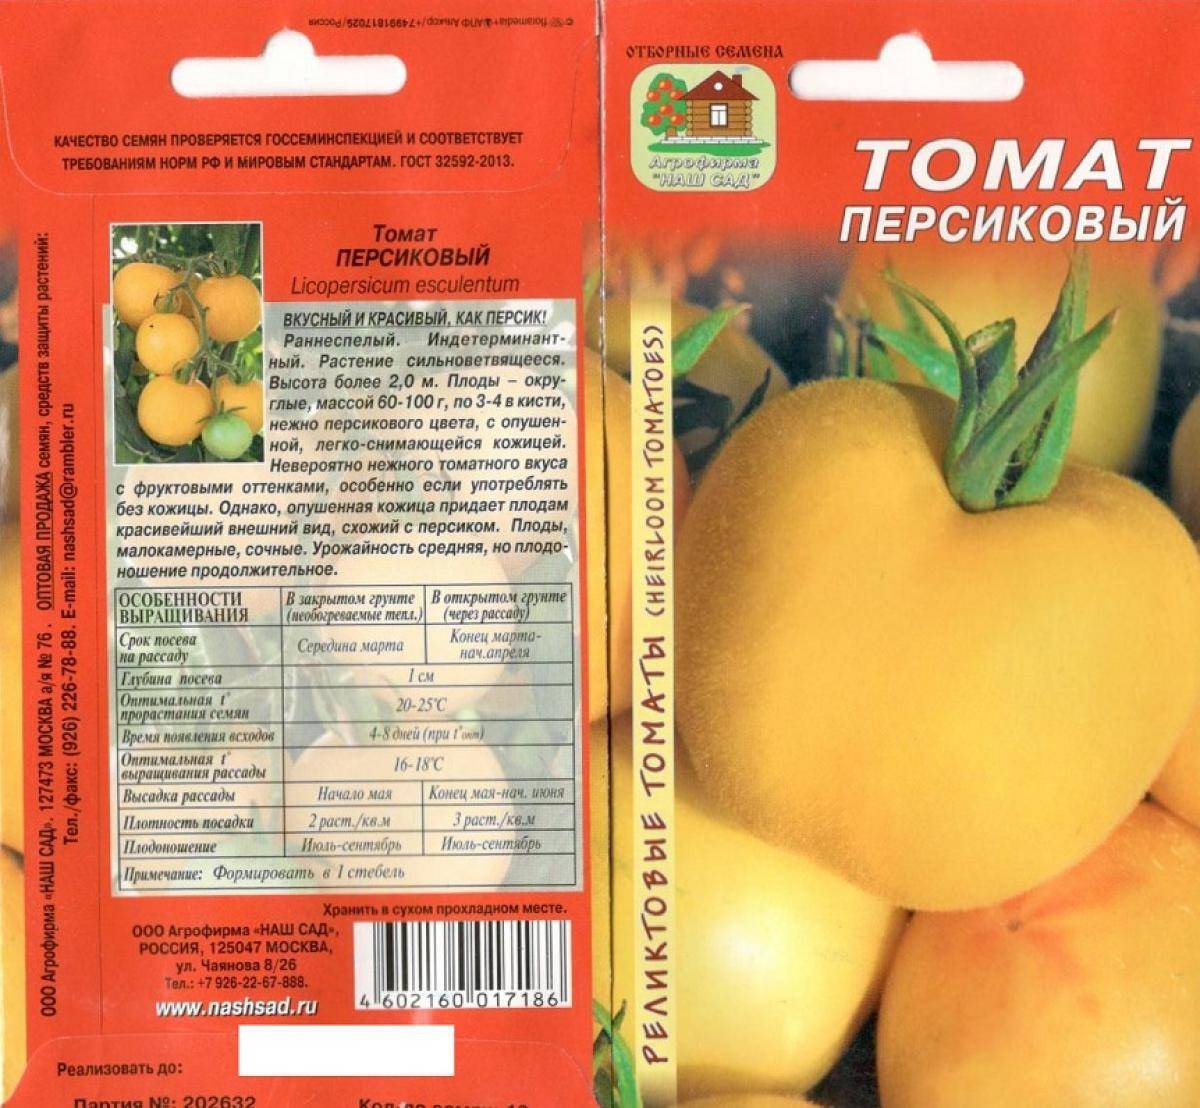 ✅ томат персик розовый f1 — описание сорта, отзывы, урожайность - cvetochki-penza.ru